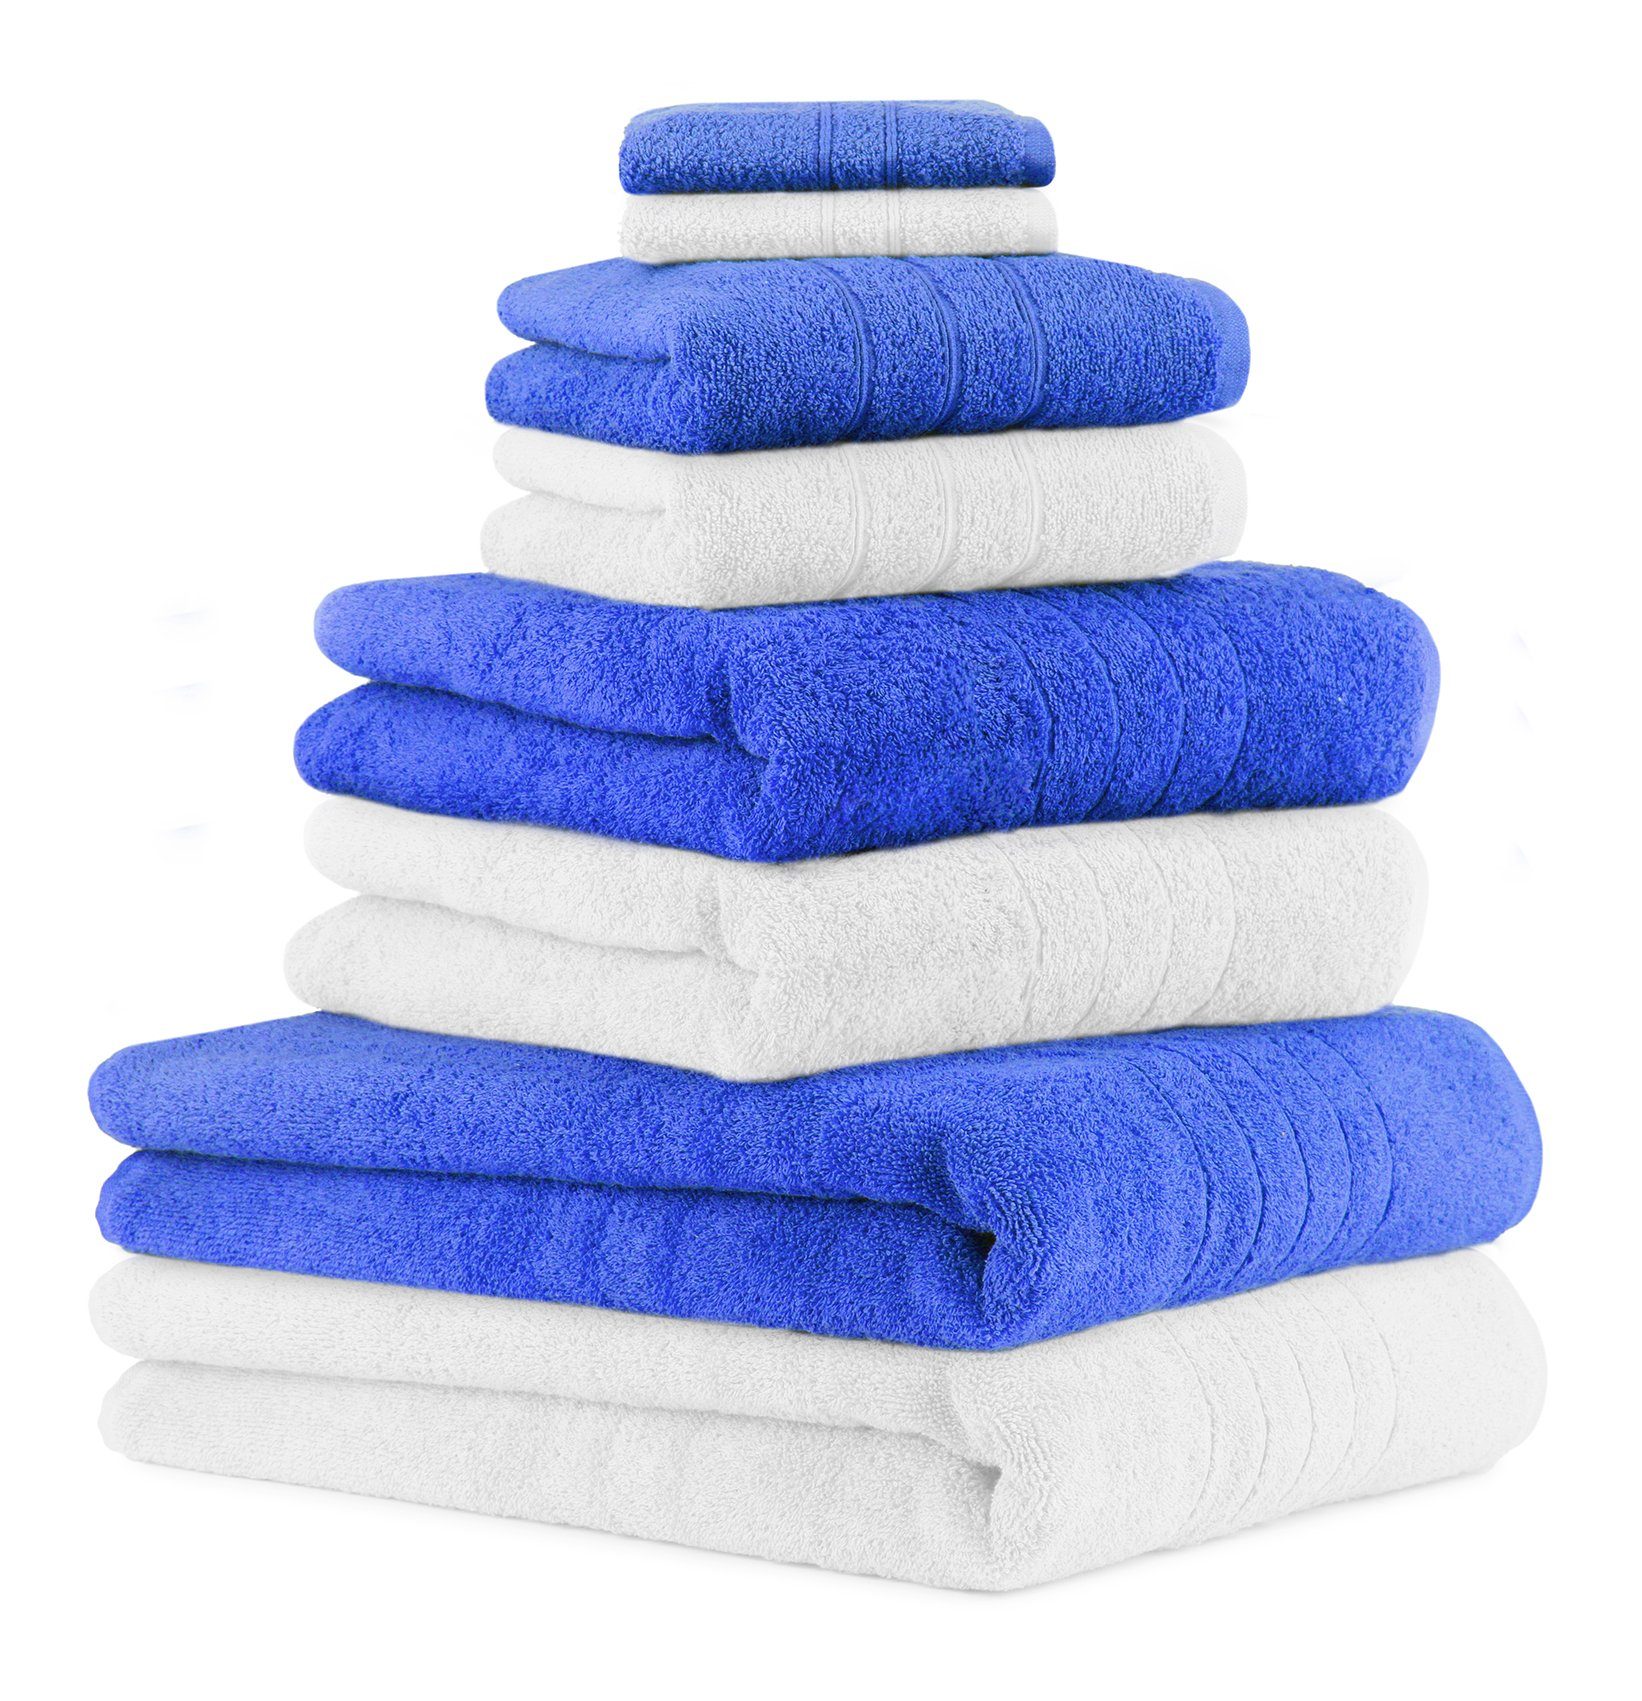 Betz Handtuch Set 8-TLG. Handtuch-Set Deluxe 100% Baumwolle 2 Badetücher 2 Duschtücher 2 Handtücher 2 Seiftücher Farbe weiß und blau, 100% Baumwolle, (8-tlg)